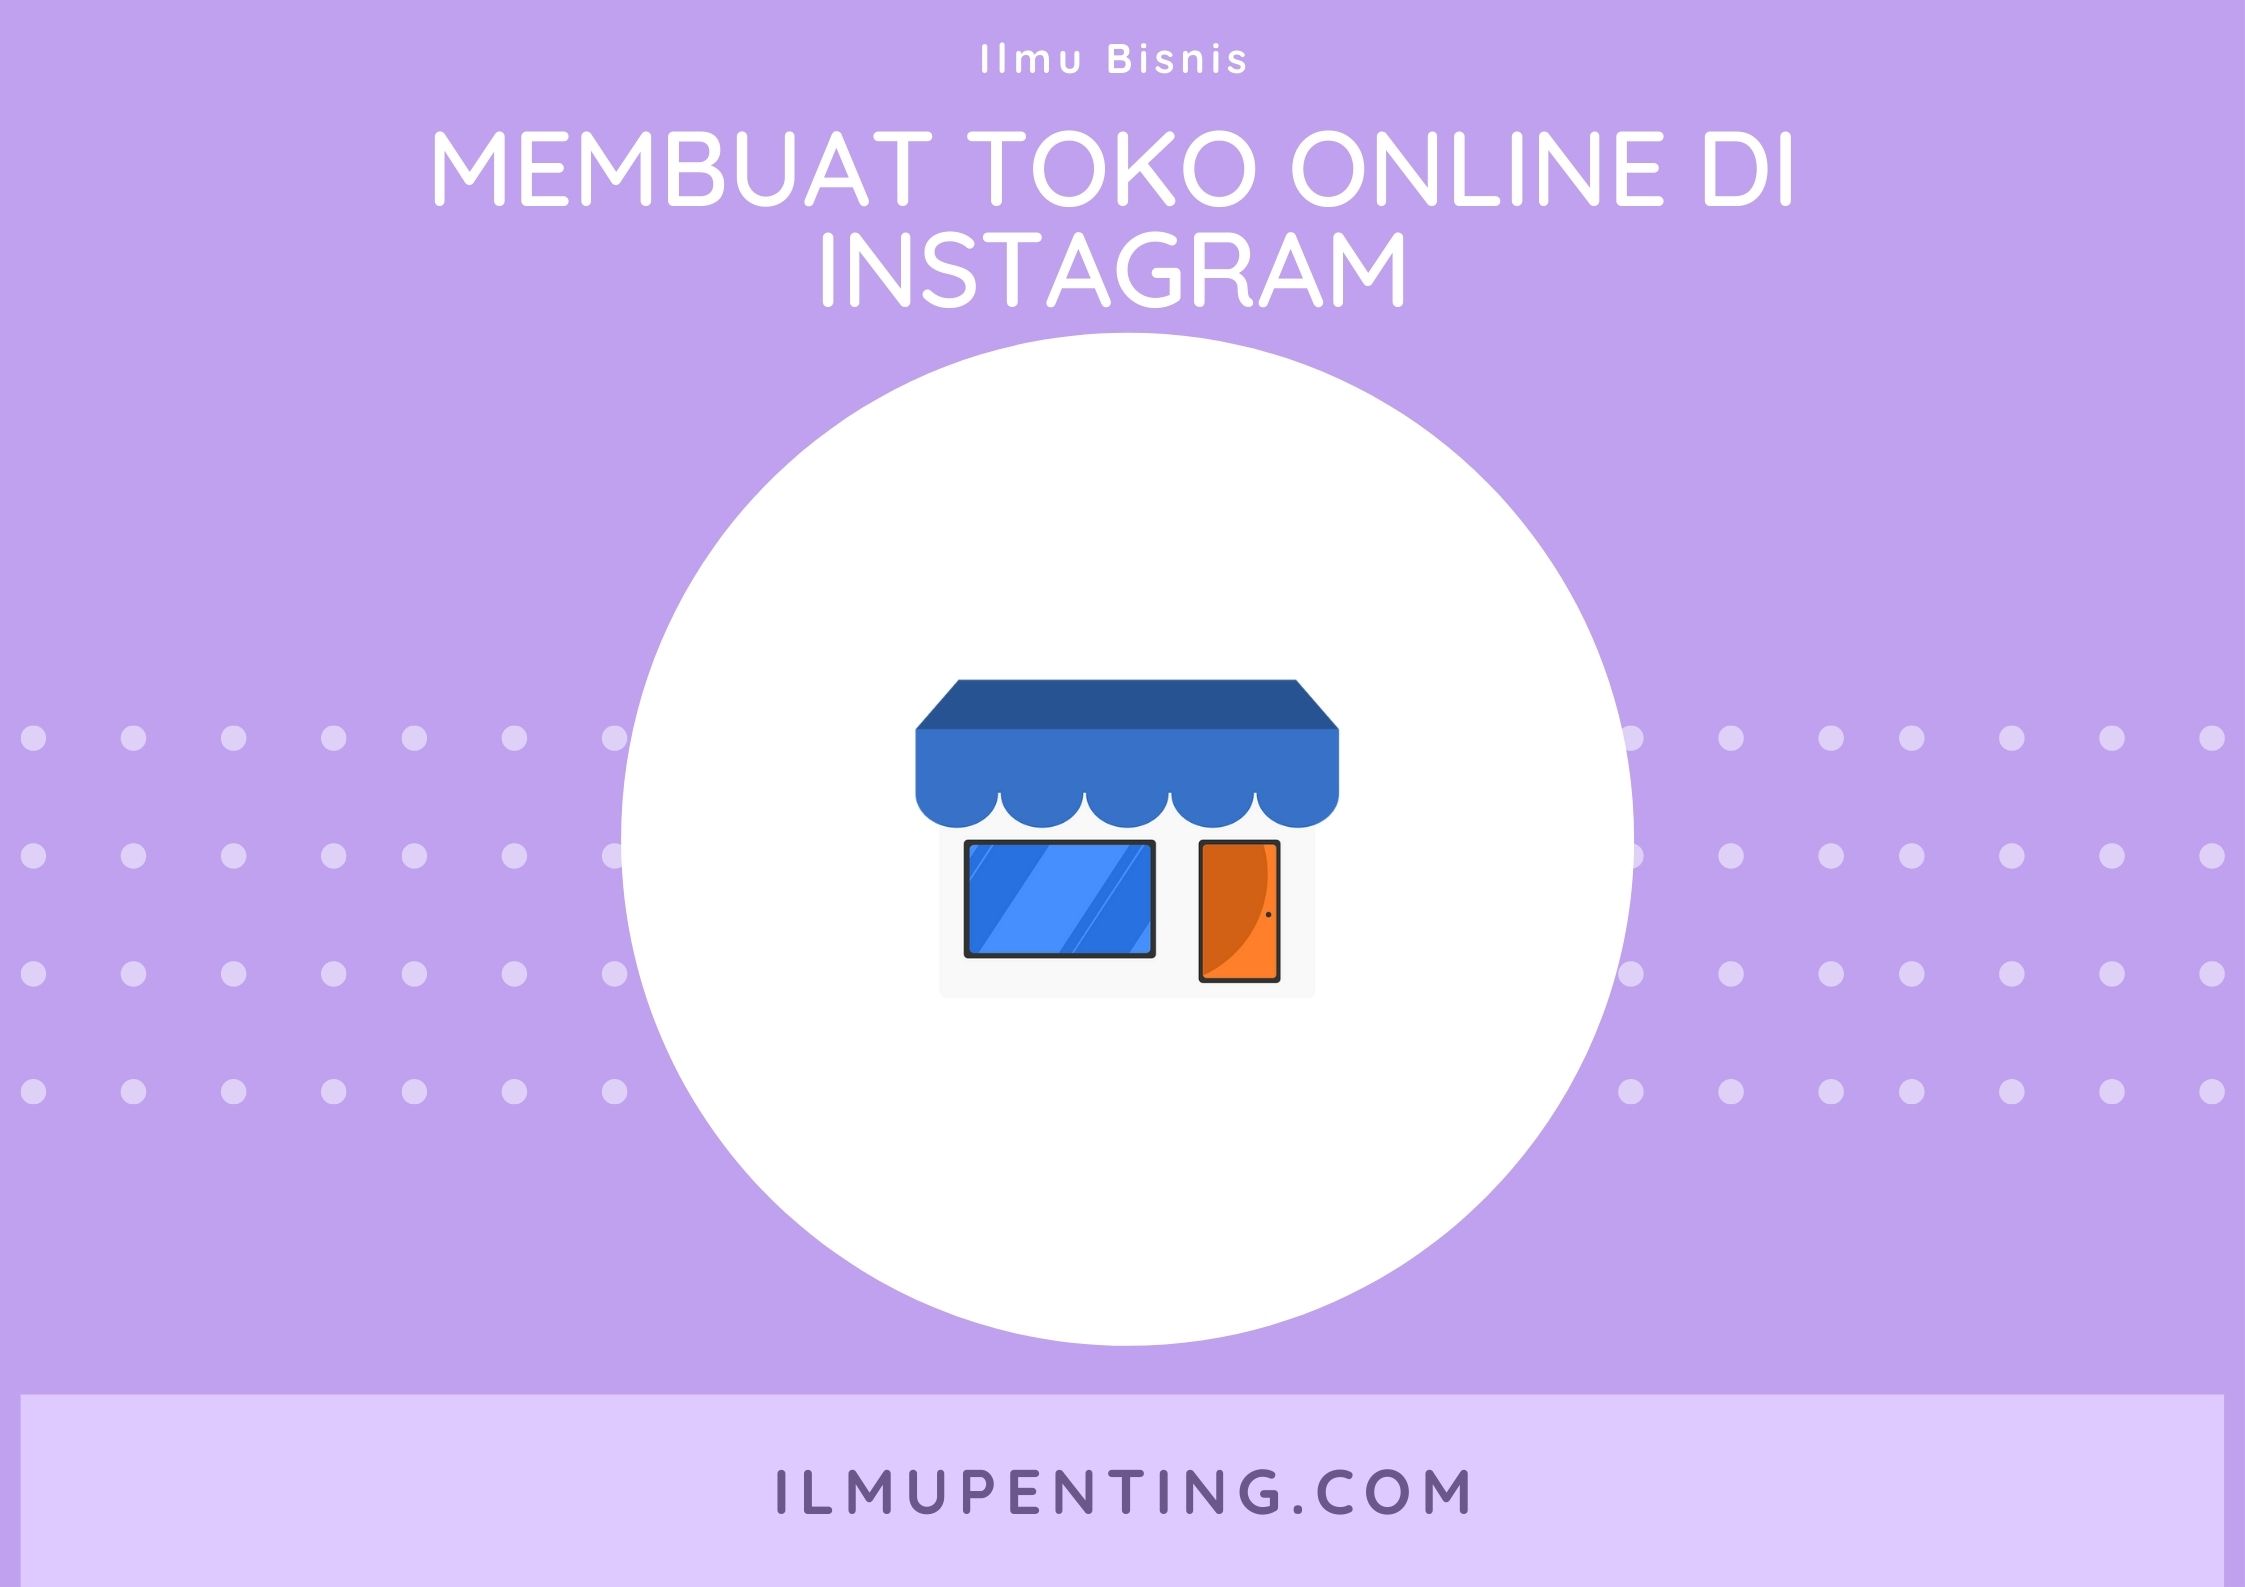 Membuat toko online di instagram